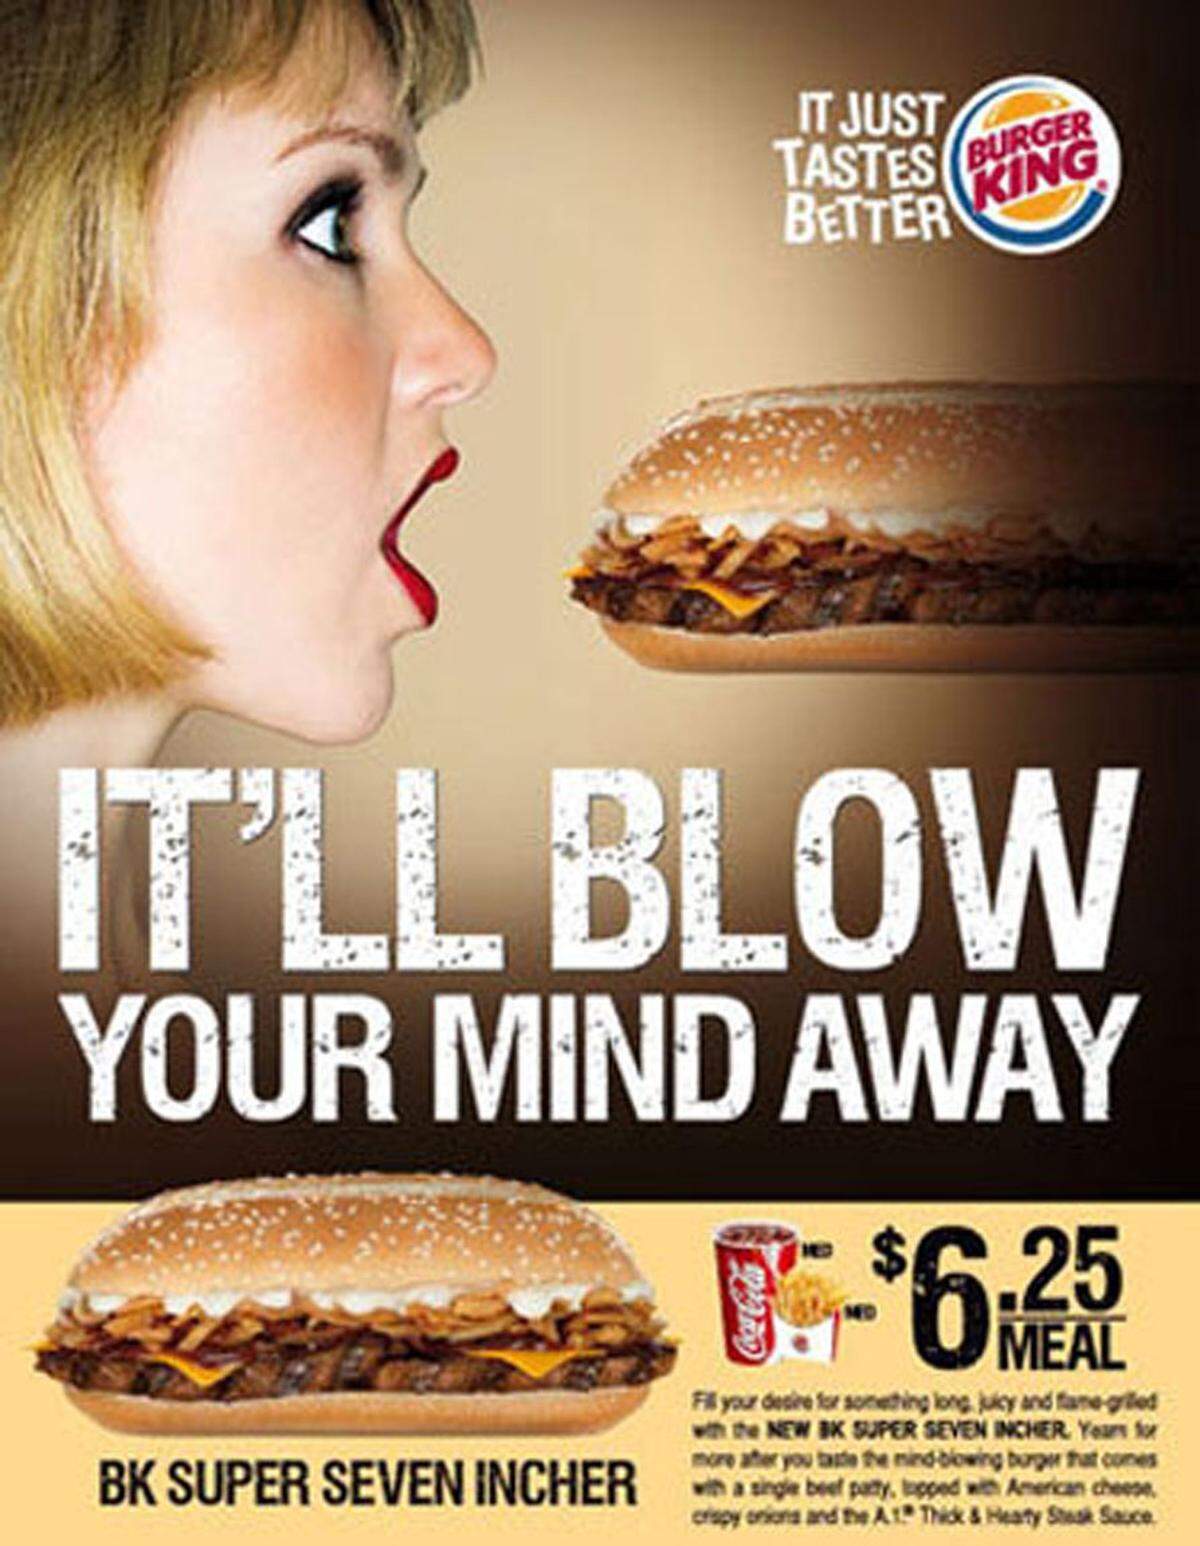 Ordentlich daneben ging auch diese Werbung von Burger King.